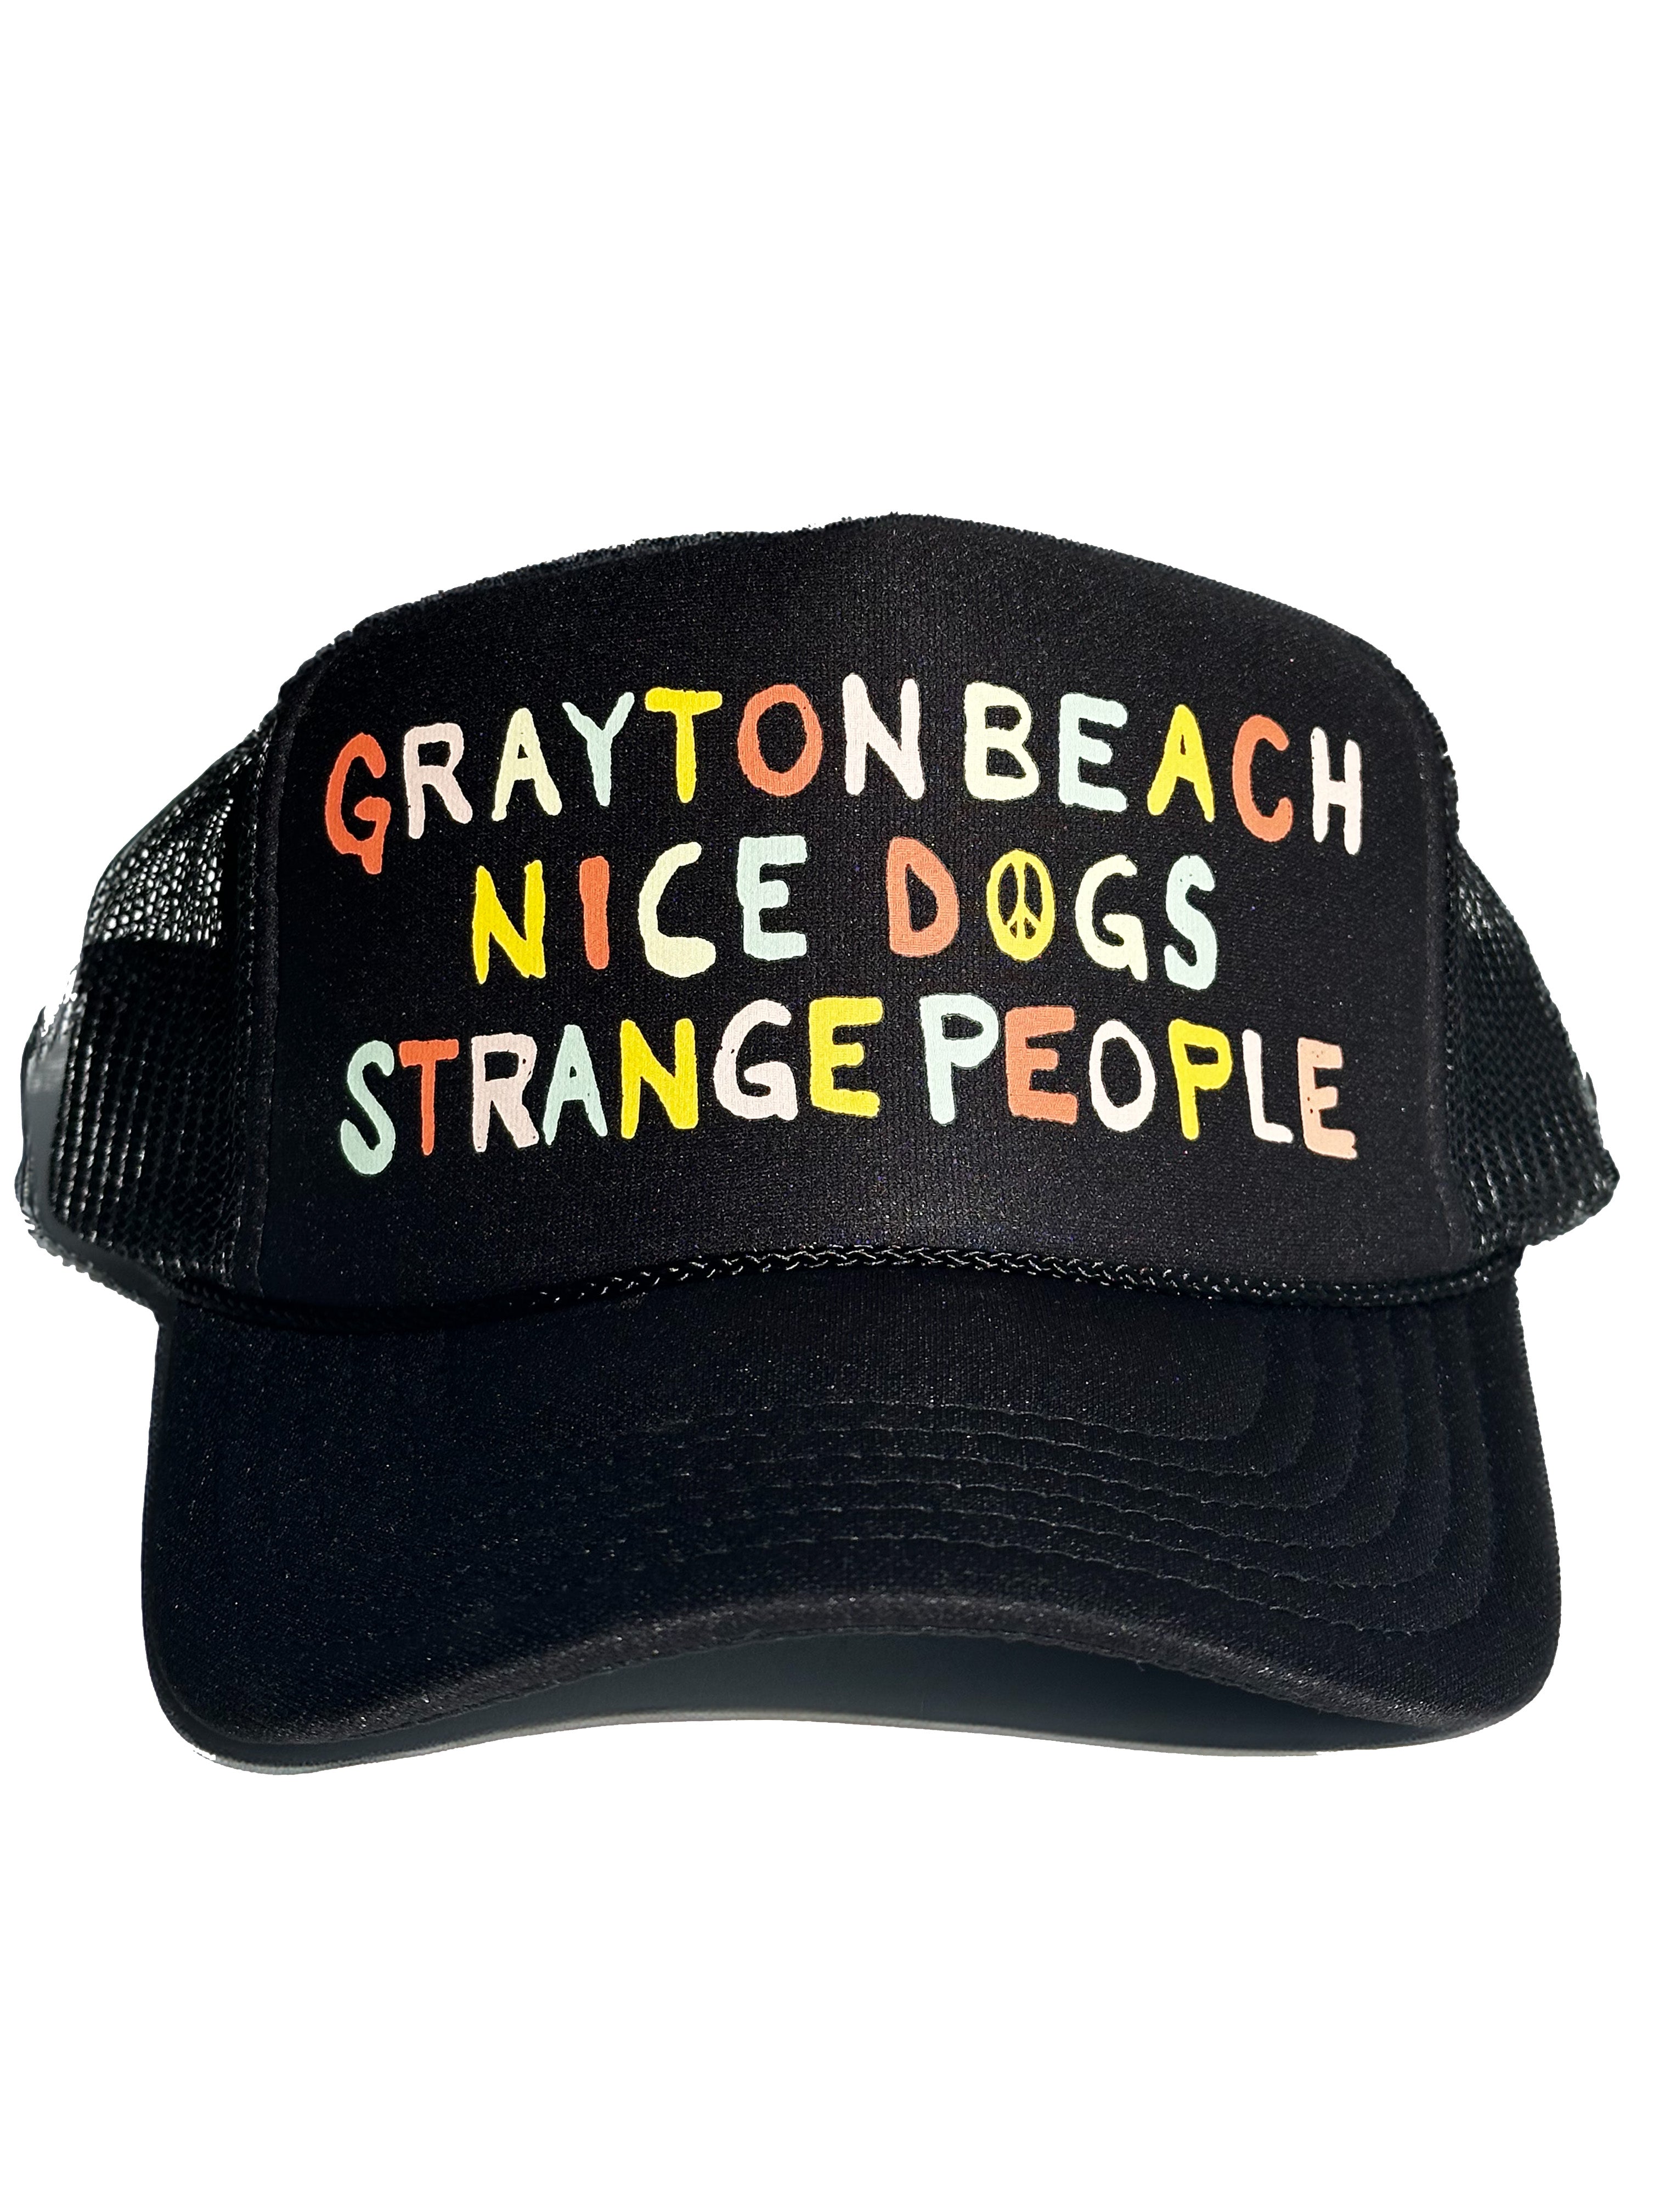 Nice Dogs Strange People Trucker Hat